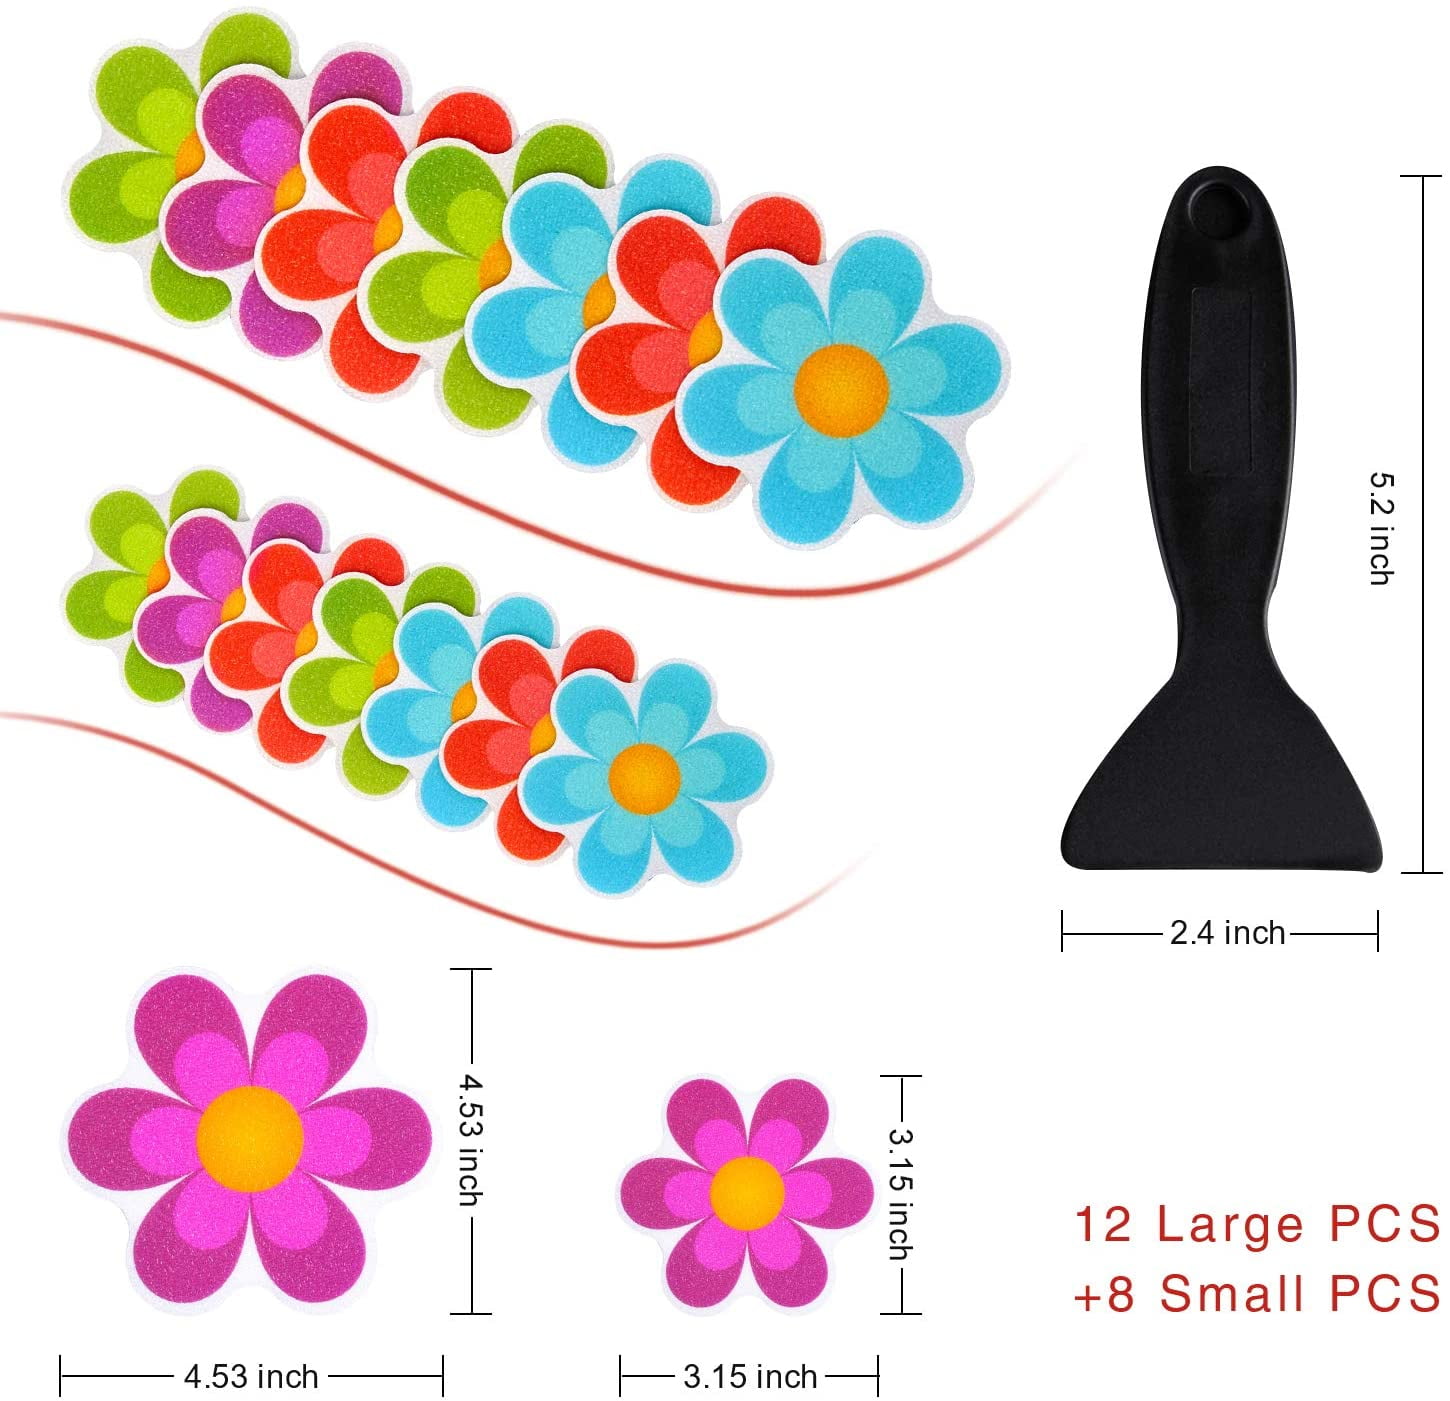 20 Flower Safety Treads Non-Slip Applique Stickers Decals Mat Bath Tub&Shower 